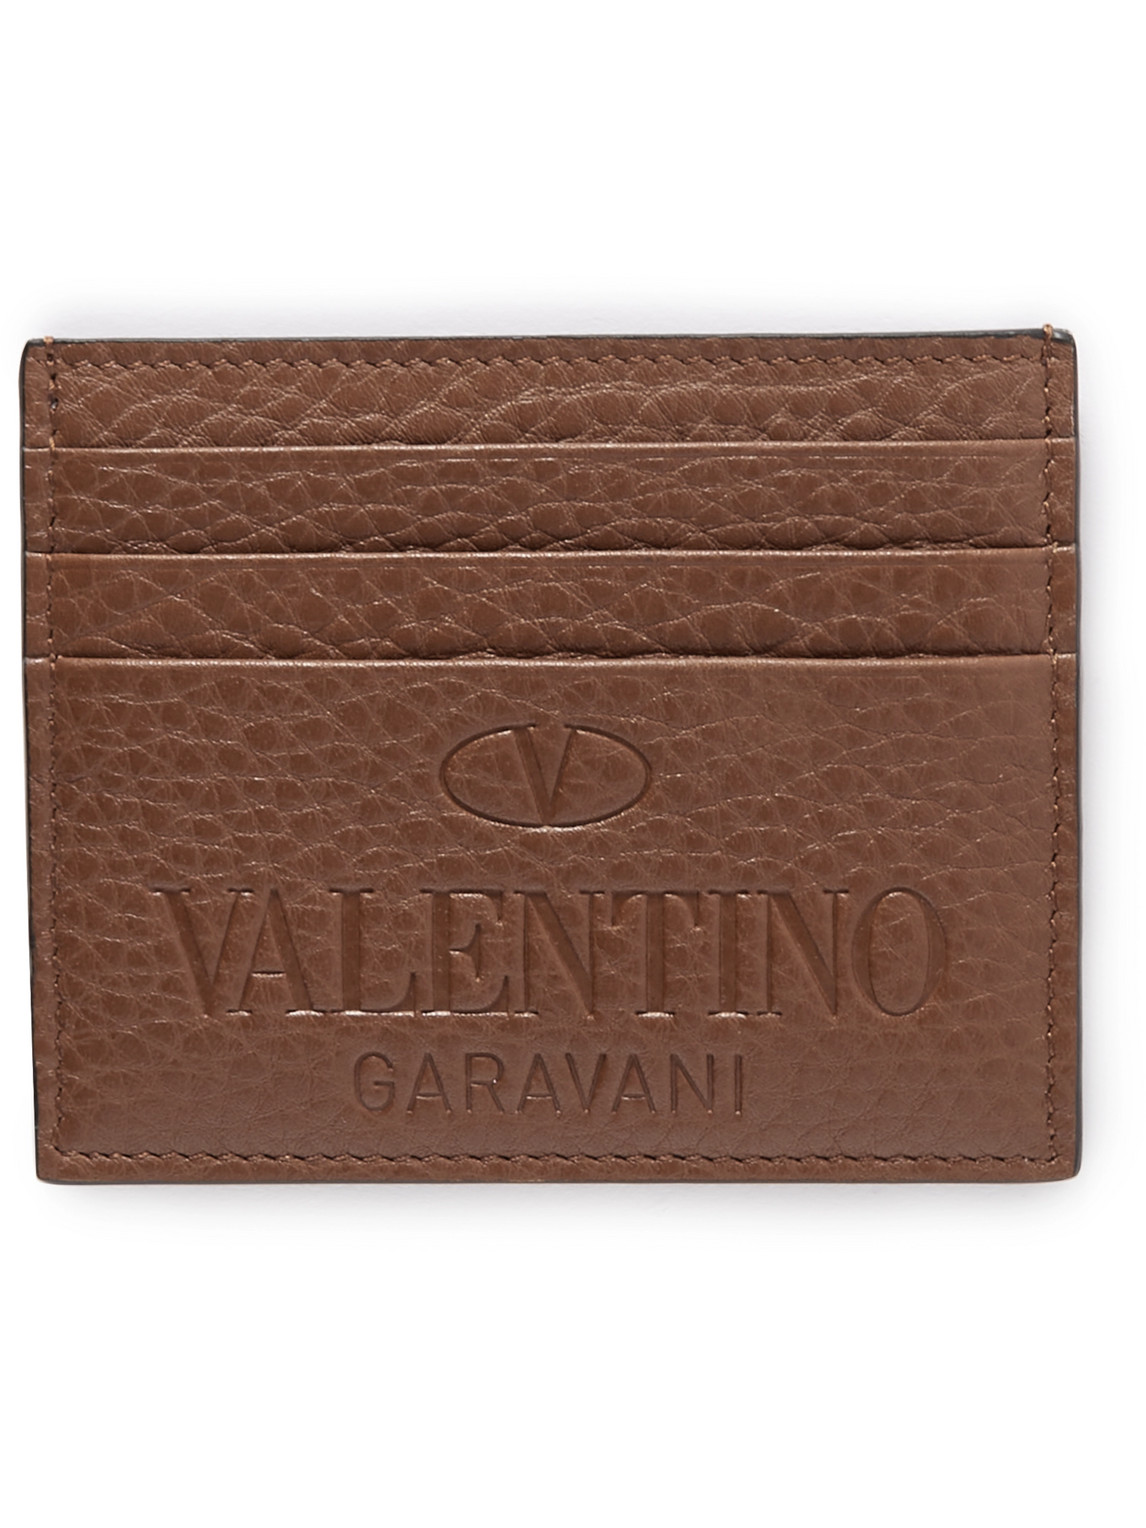 Valentino Garavani Logo-Debossed Full-Grain Leather Cardholder